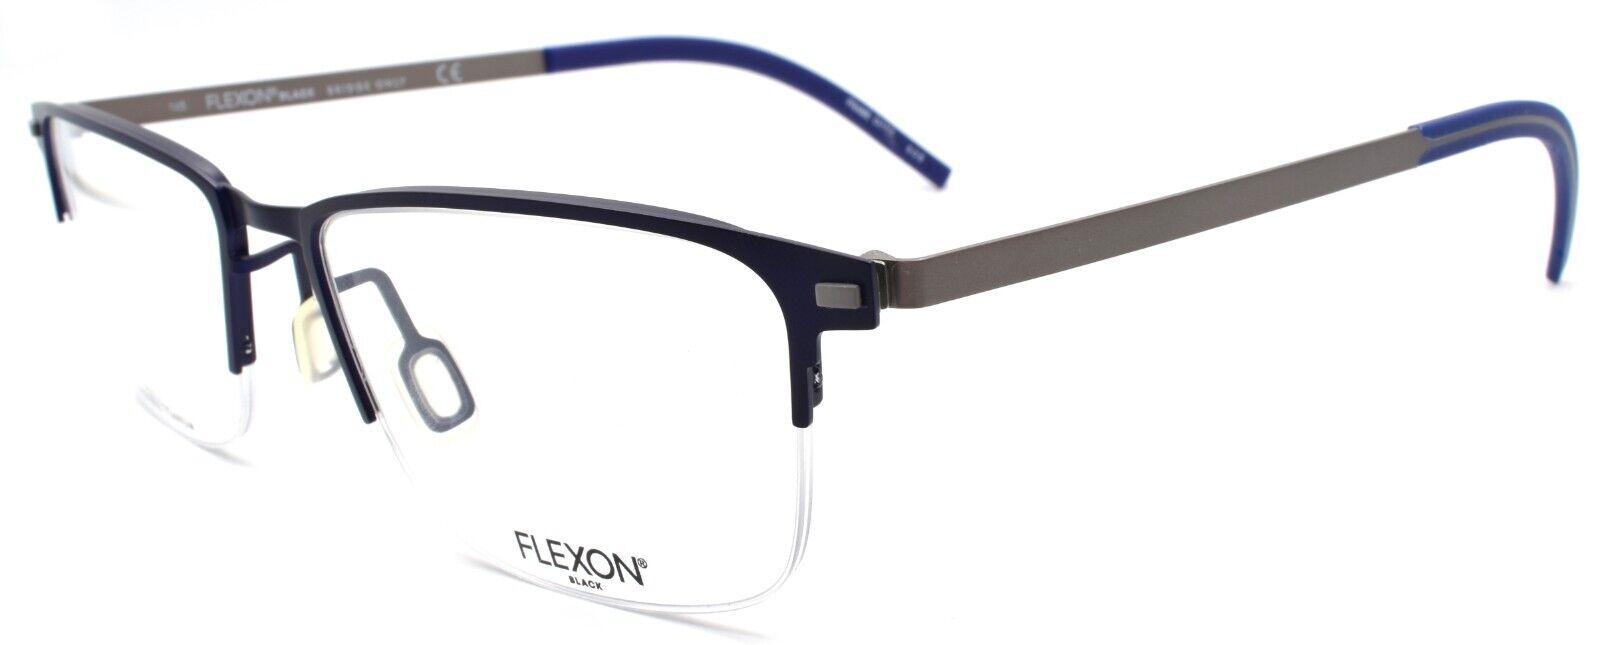 1-Flexon B2030 412 Men's Eyeglasses Navy Half-rim 54-18-145 Flexible Titanium-883900204583-IKSpecs